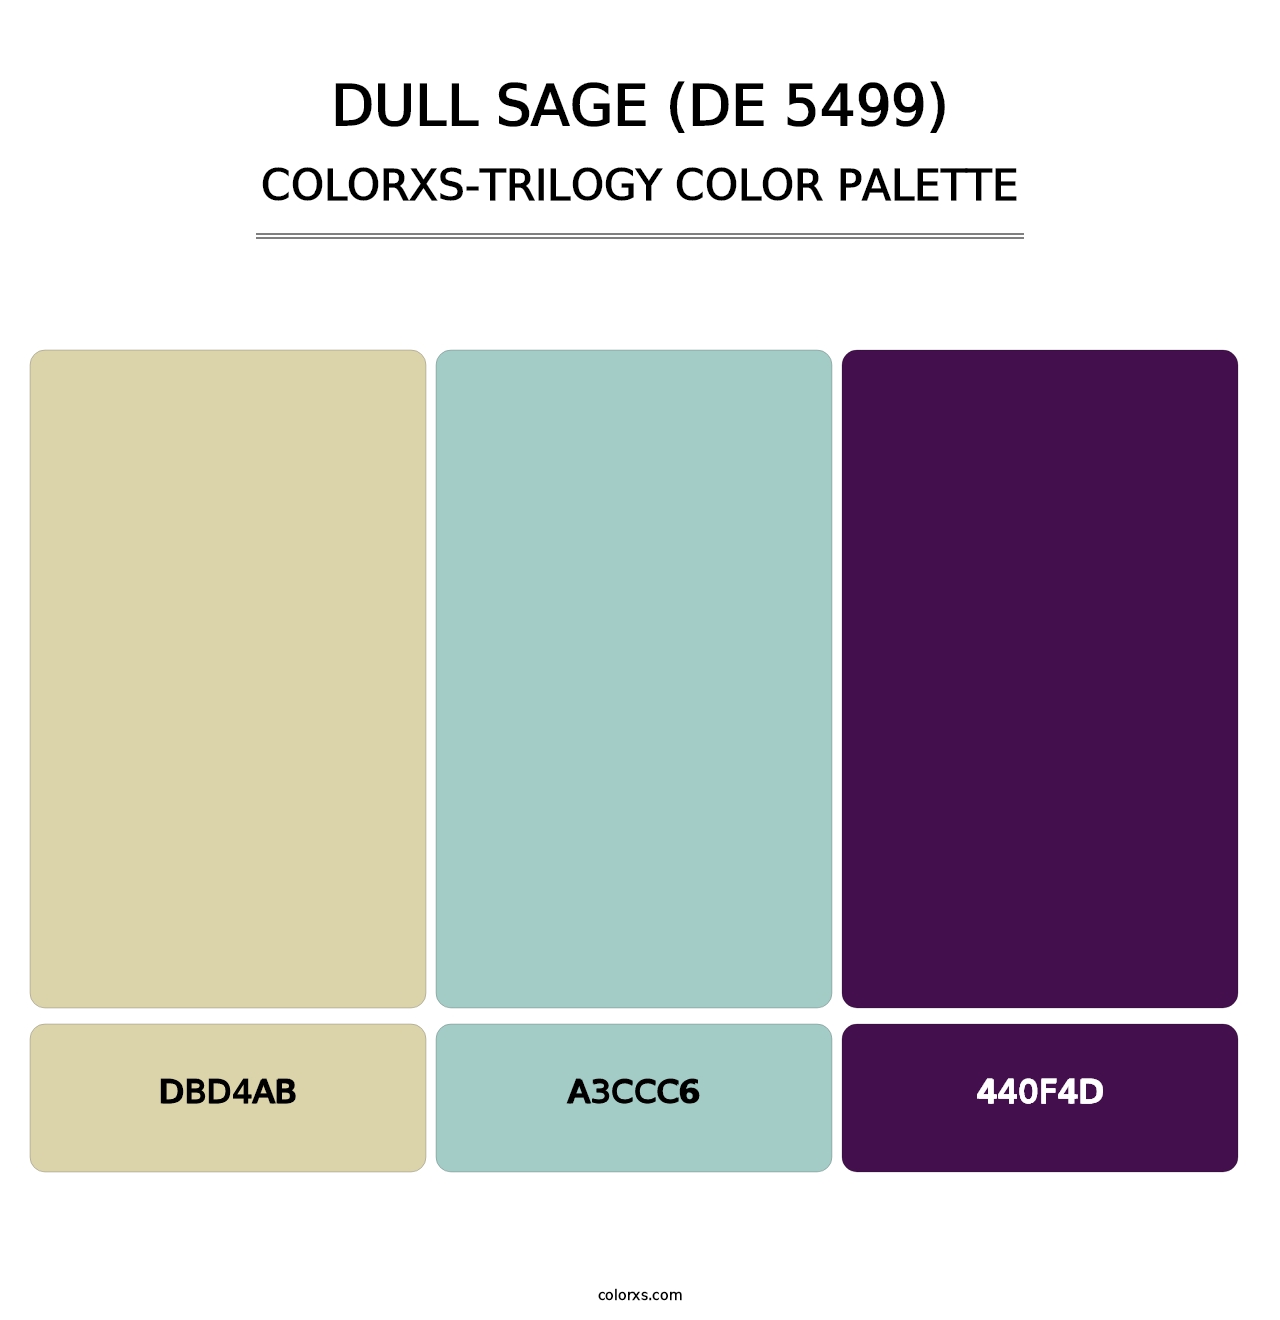 Dull Sage (DE 5499) - Colorxs Trilogy Palette